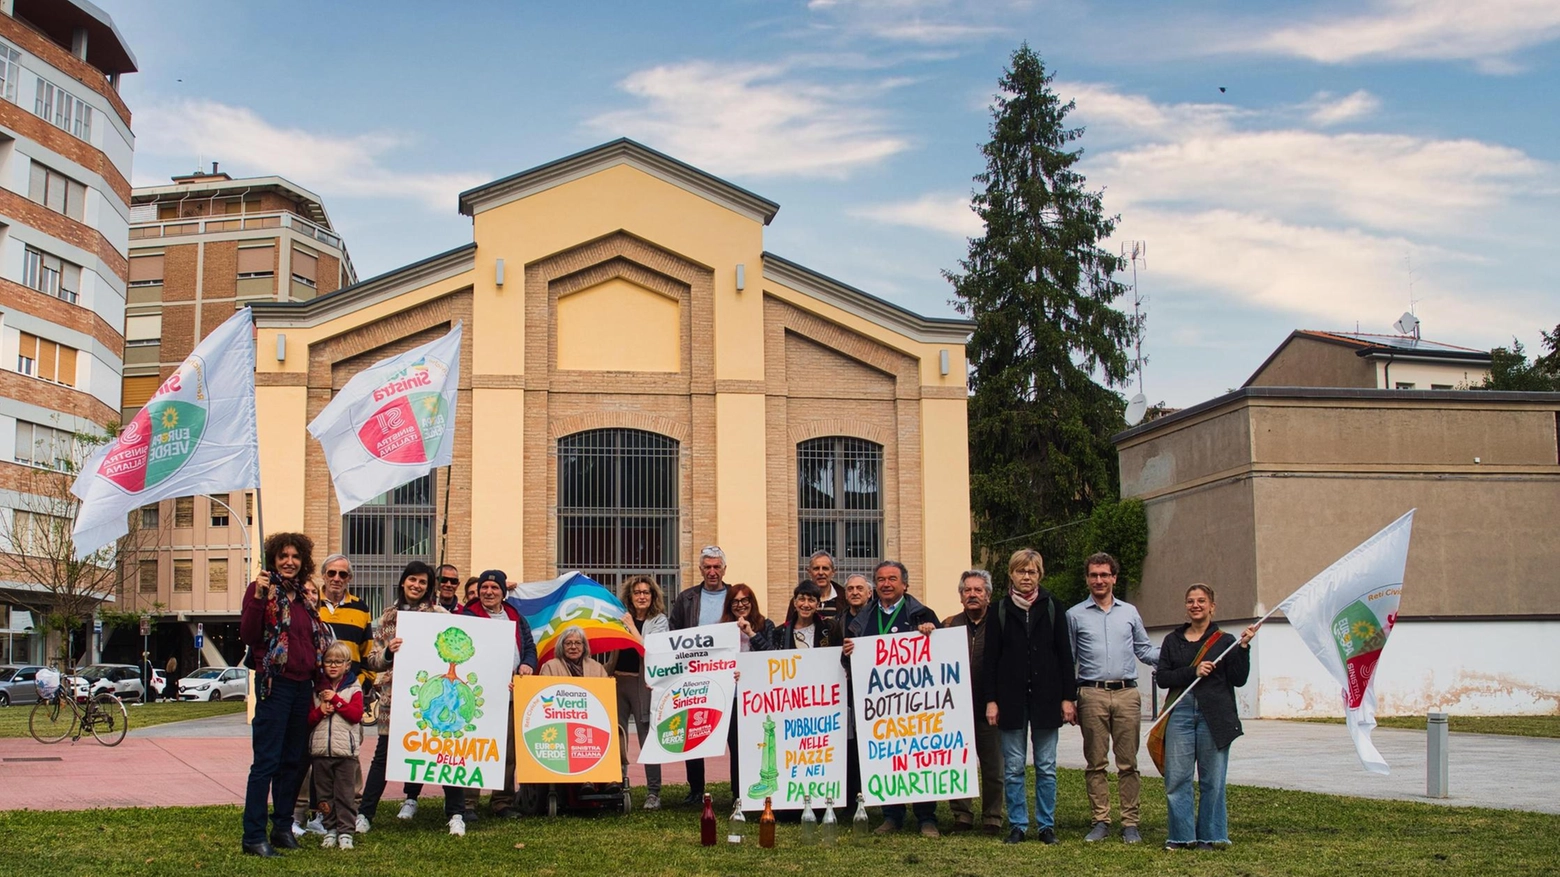 Proposta di Alleanza Verdi e Sinistra di Forlì in occasione della giornata mondiale della terra: "Un impianto in ogni quartiere: così si riaccende la vita".